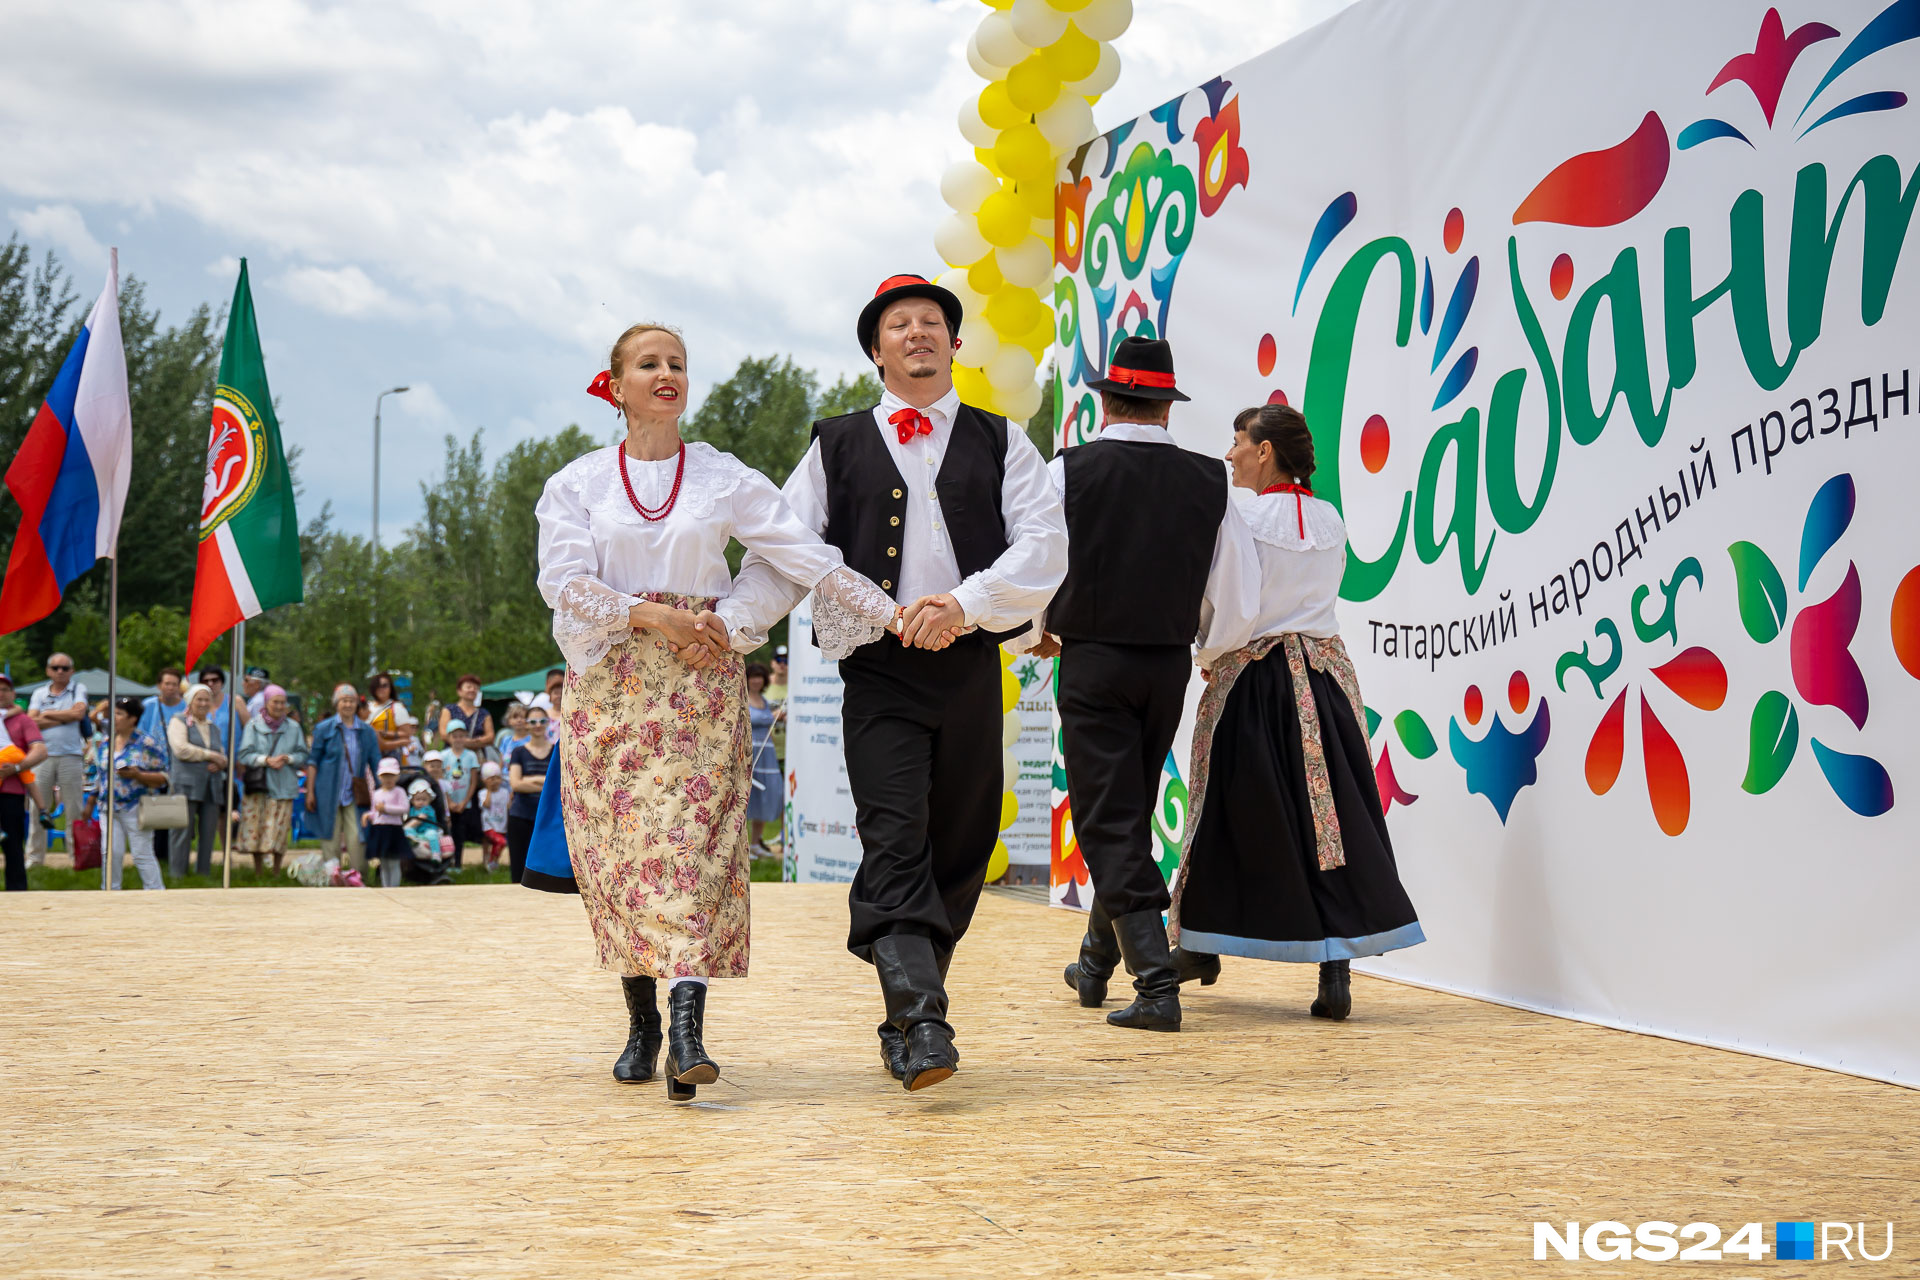 Это польский народный танцевальный коллектив